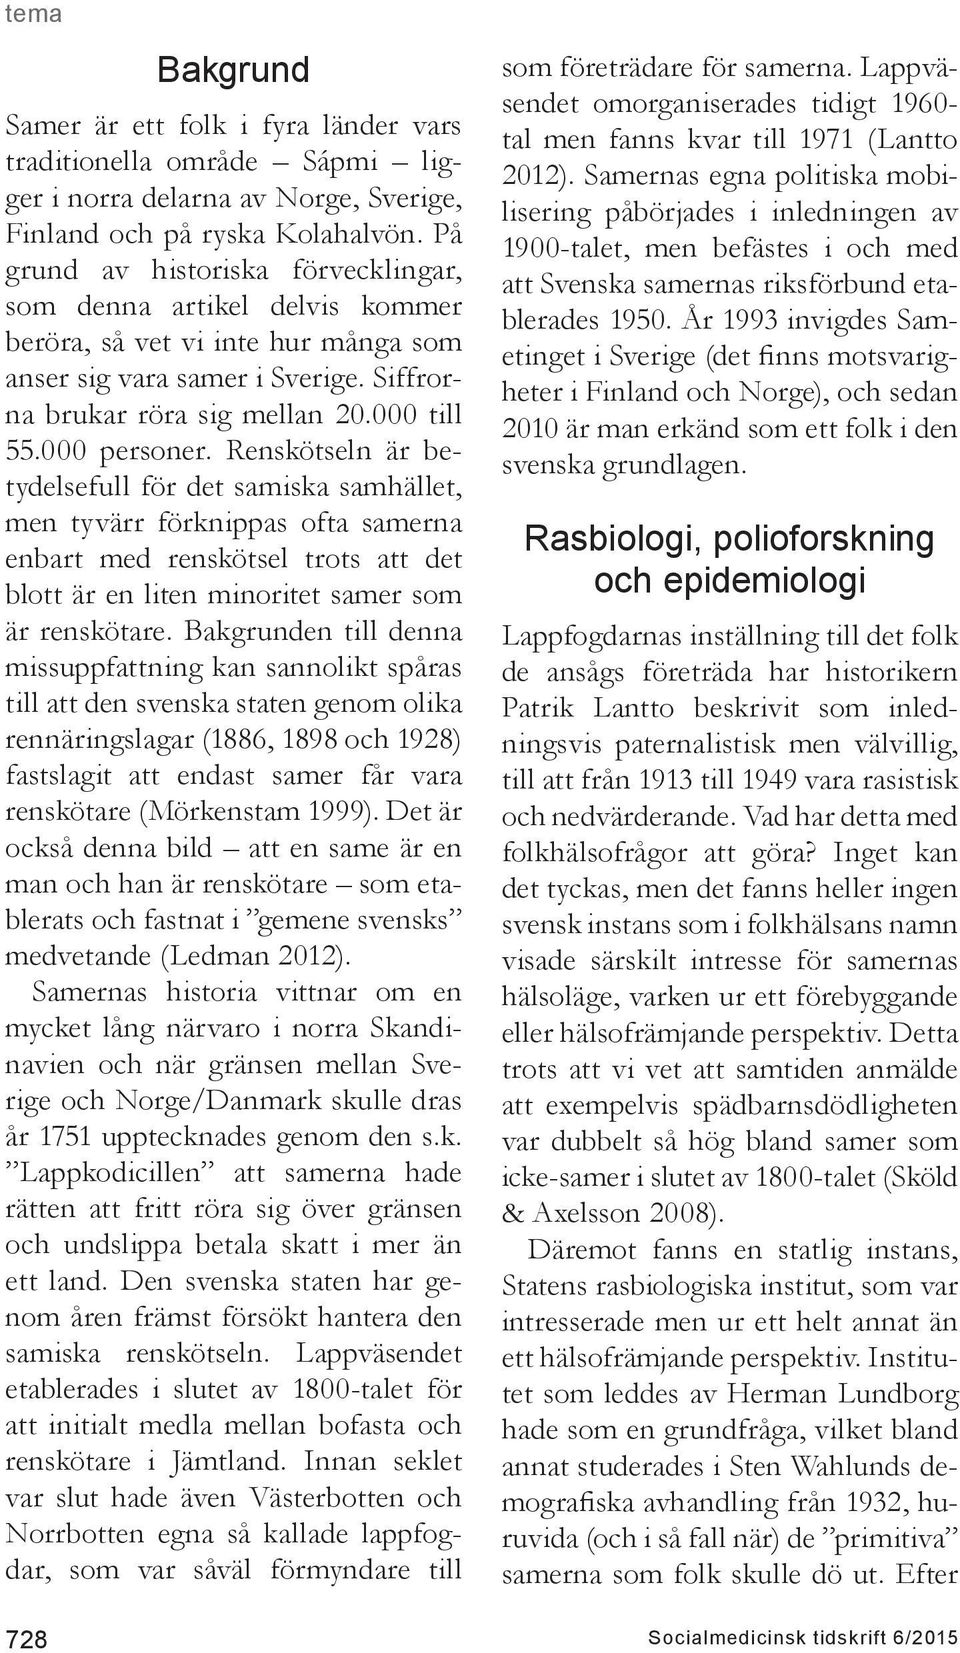 Renskötseln är betydelsefull för det samiska samhället, men tyvärr förknippas ofta samerna enbart med renskötsel trots att det blott är en liten minoritet samer som är renskötare.